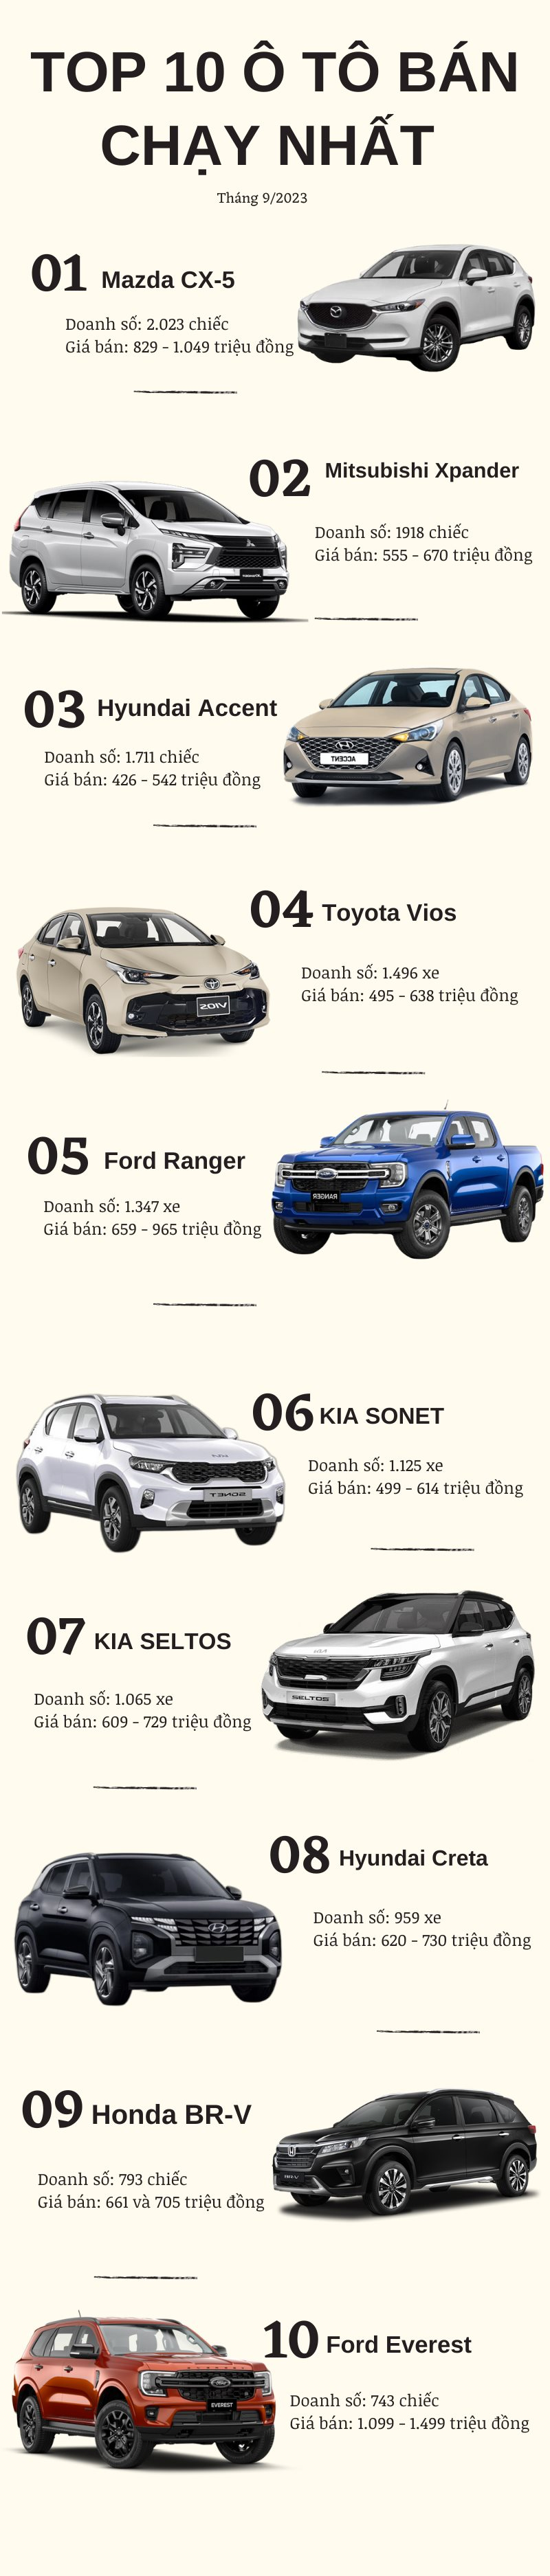 Top 10 ô tô bán chạy nhất tháng 9/2023: Ngôi vua dễ đoán, 1 xe ‘lạ’ bất ngờ xuất hiện - Ảnh 2.